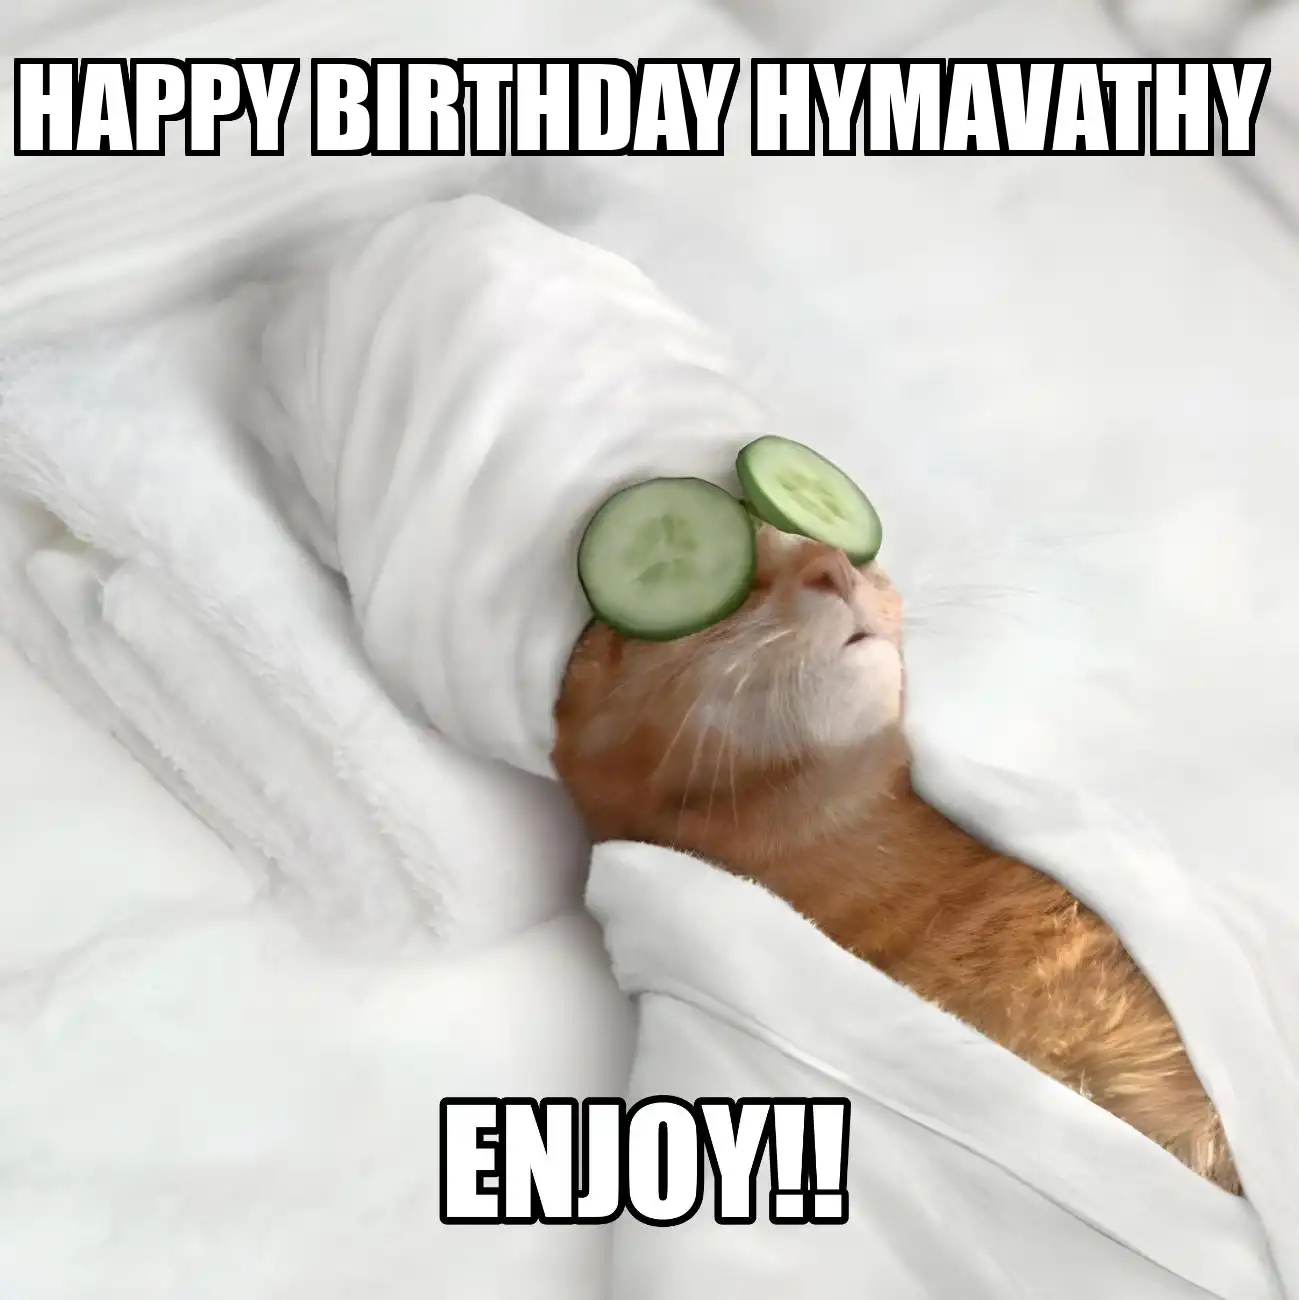 Happy Birthday Hymavathy Enjoy Cat Meme